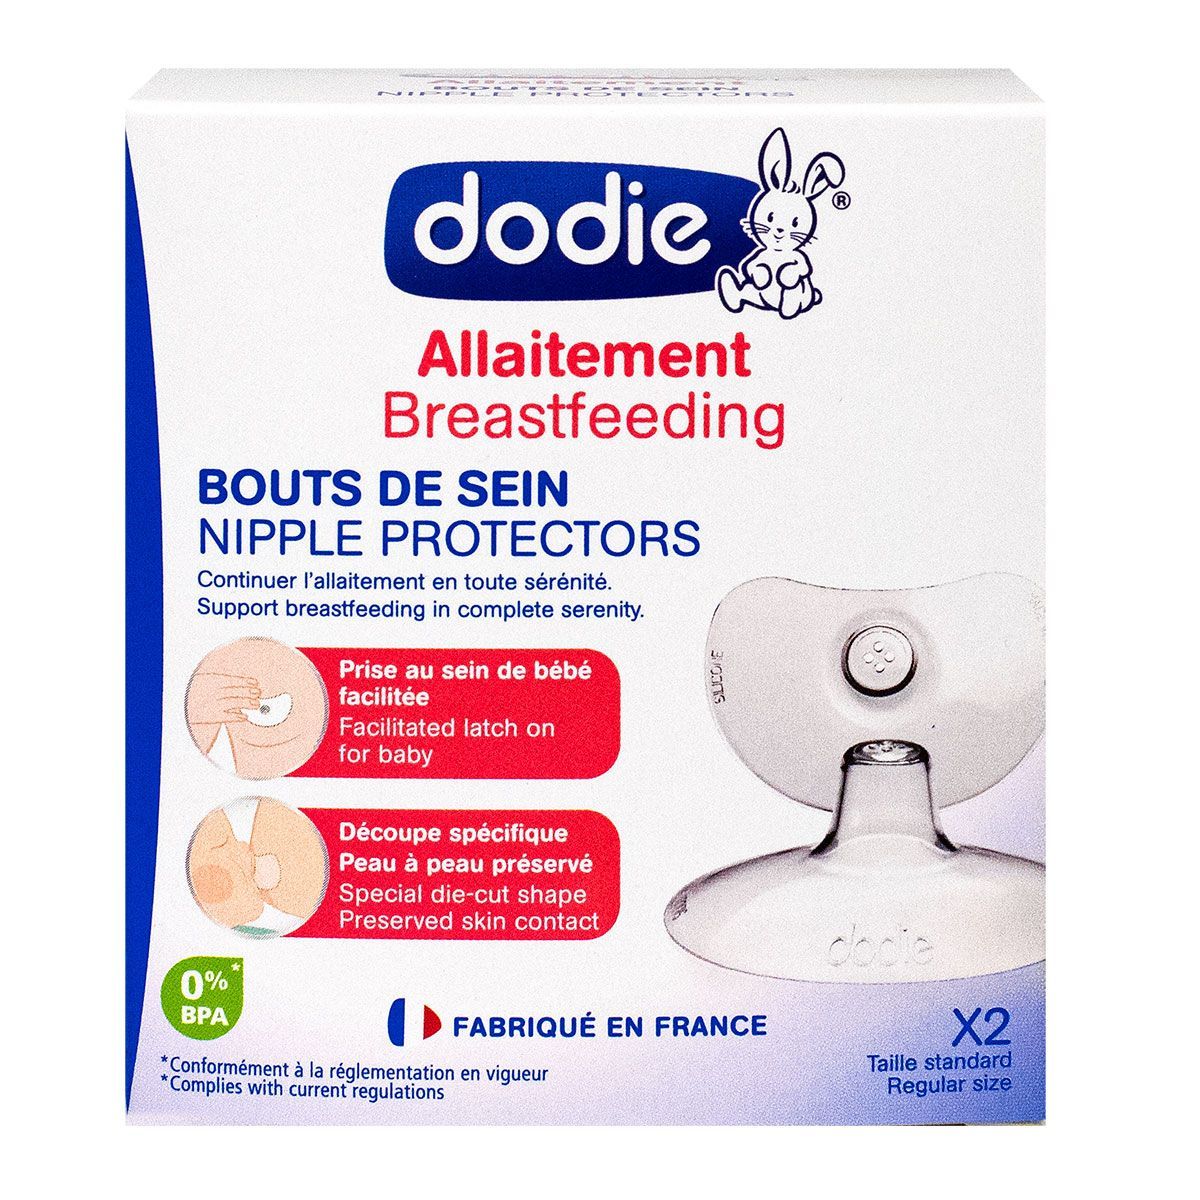 Les bouts de sein Dodie permettent de continuer l'allaitement en toute  sérénité.